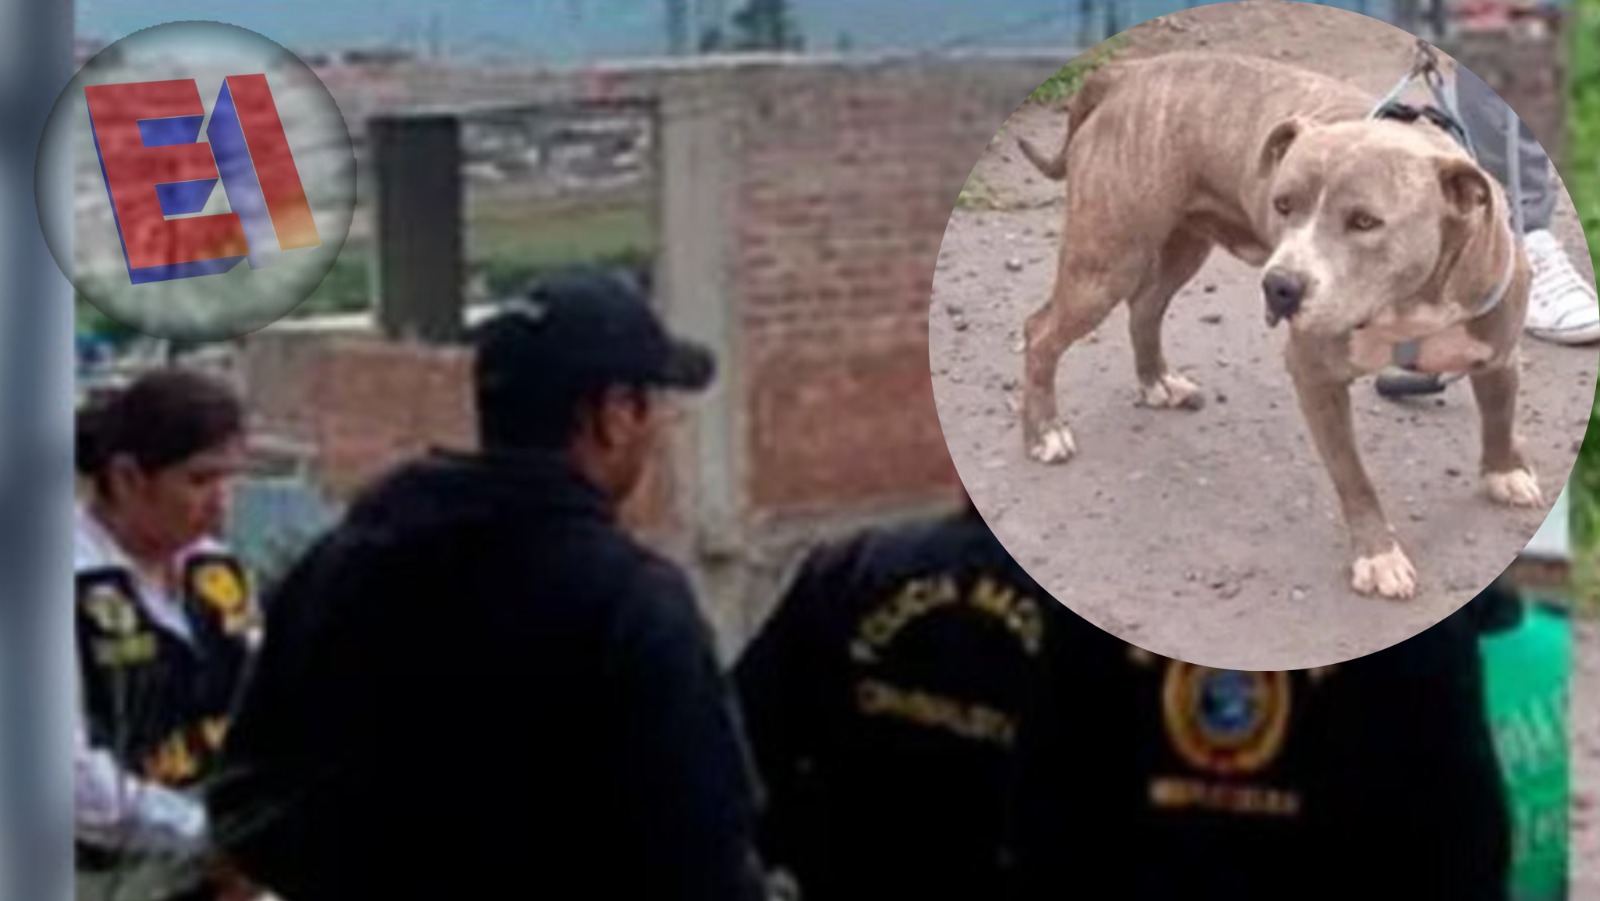 Perro de raza pitbul mata a anciano y deja tres personas heridas